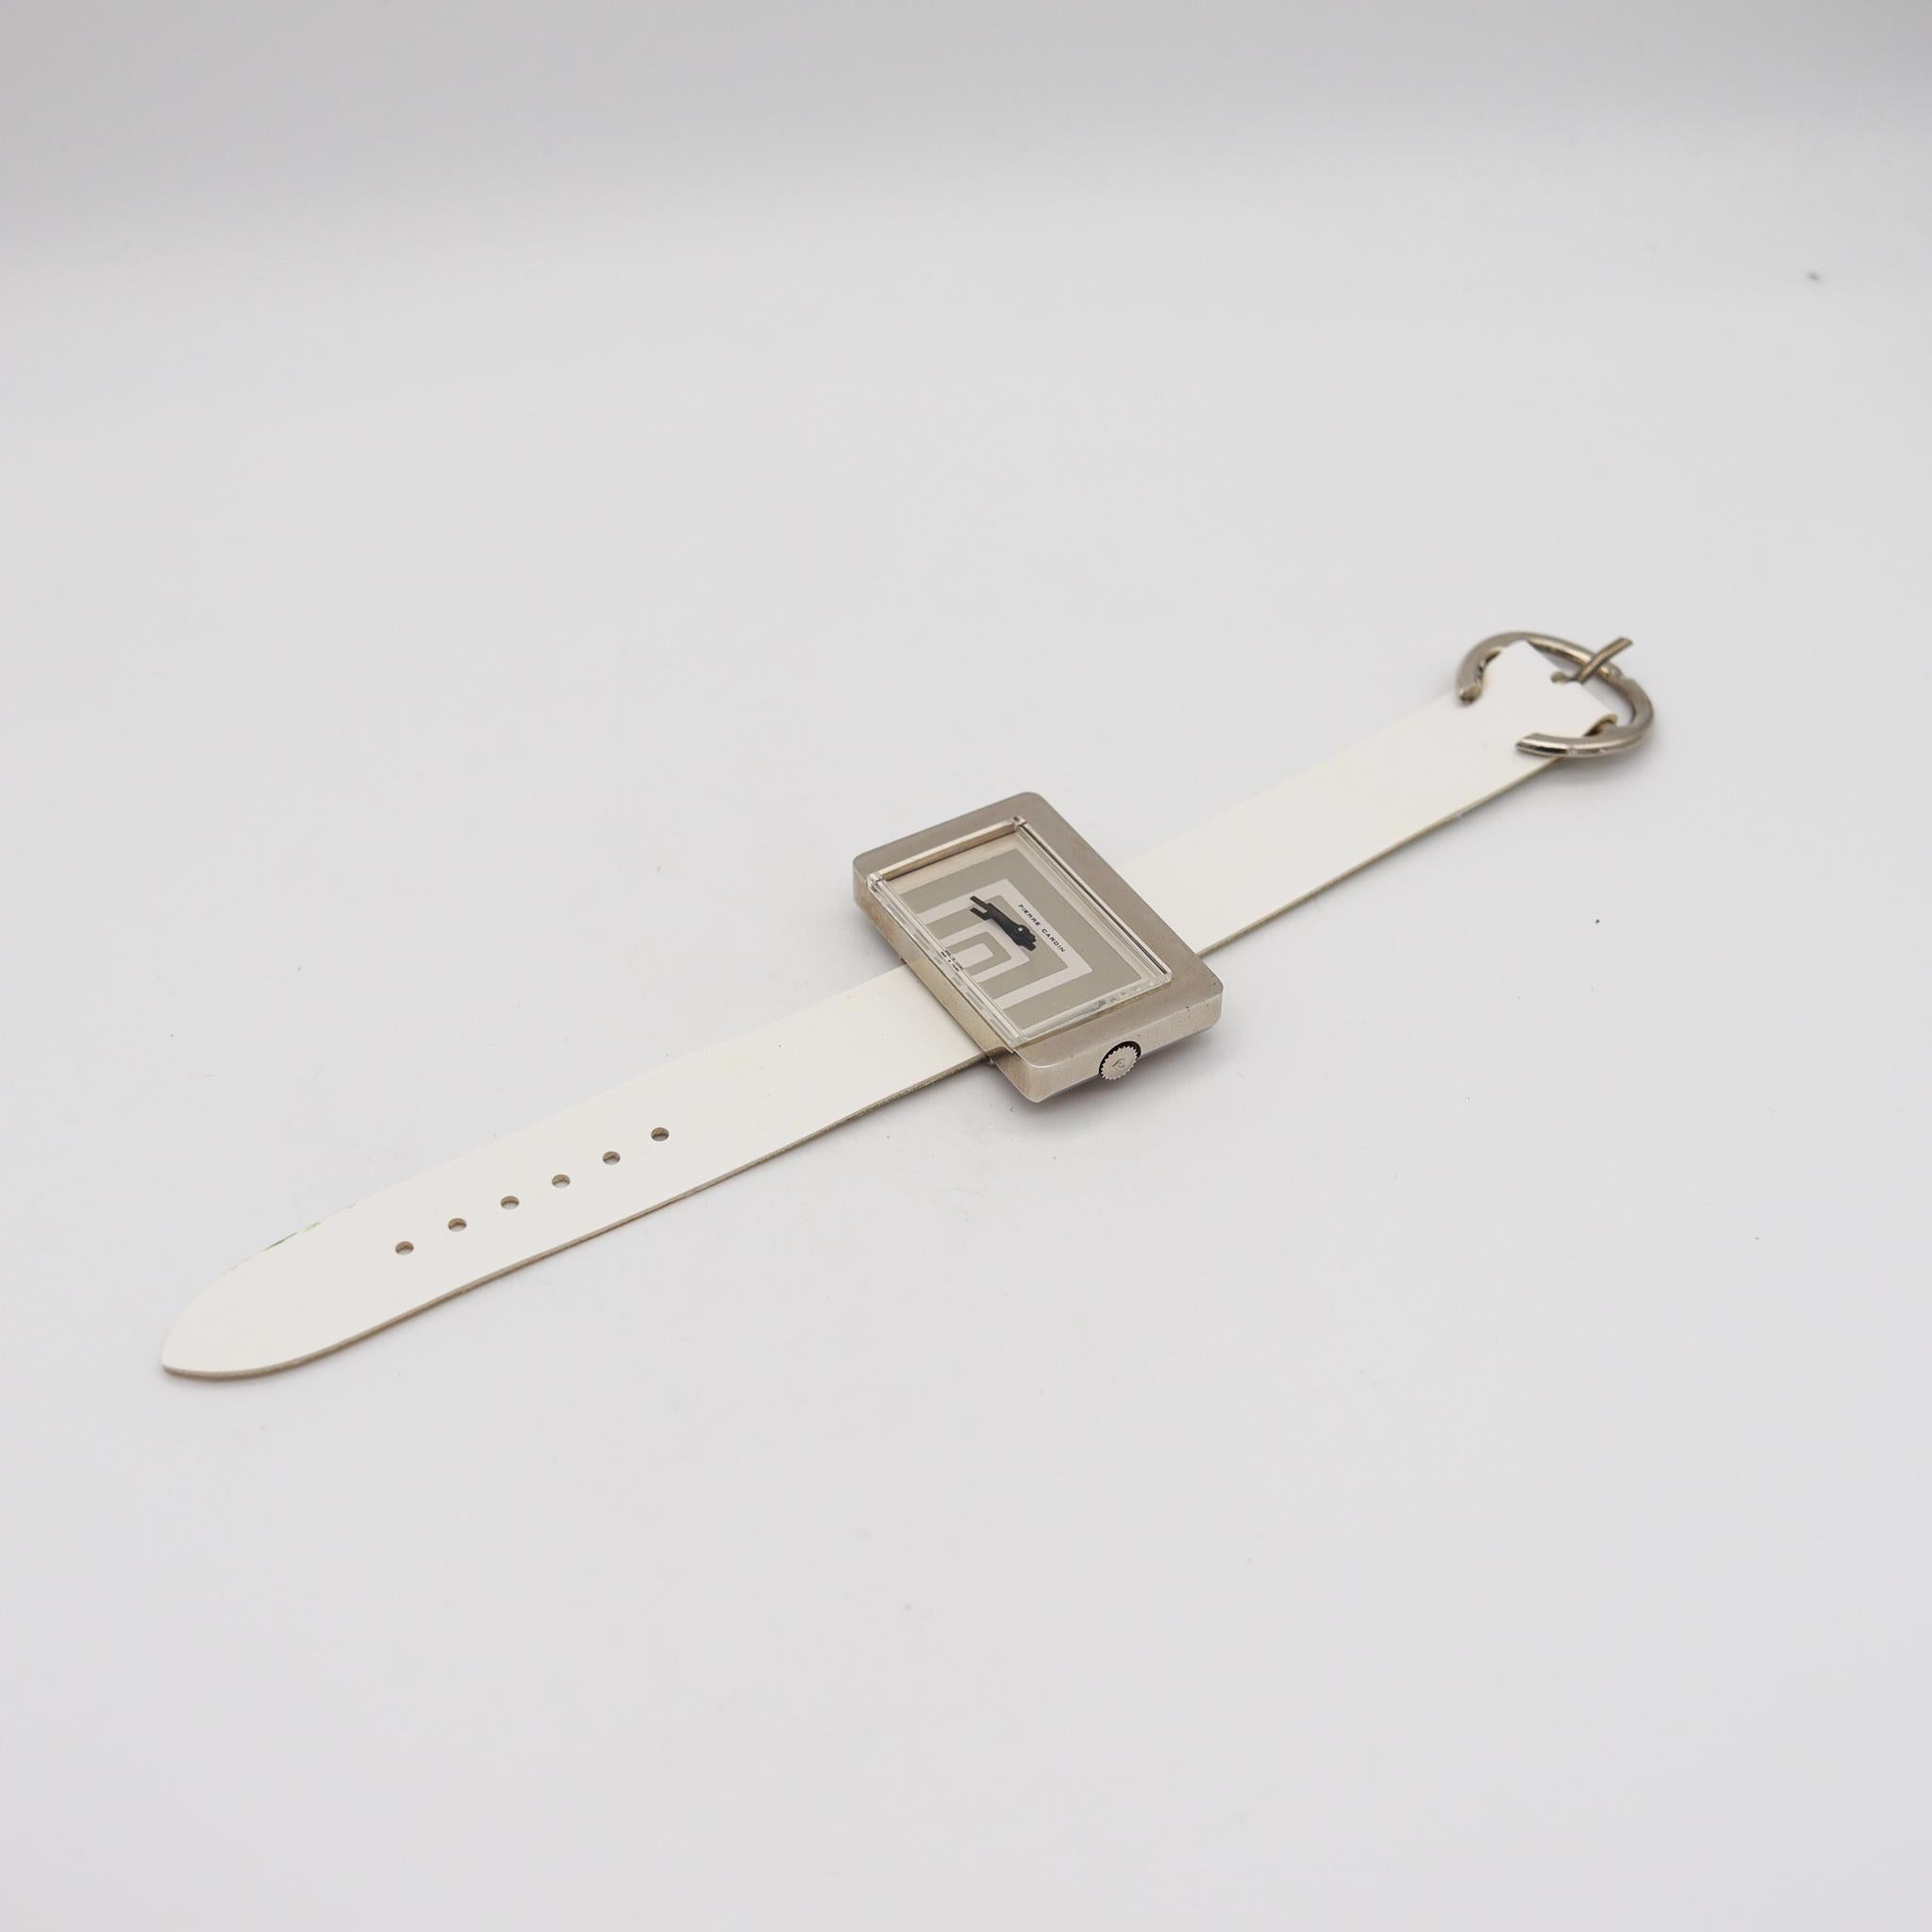 Jaeger-LeCoultre PC116 Handgelenkuhr, entworfen von Pierre Cardin.

Fabelhafte Retro-Armbanduhr, entworfen in Frankreich vom Pariser Modedesigner Pierre Cardin im Jahr 1971. Bei dieser schönen und seltenen Uhr handelt es sich um das Modell PC116 von